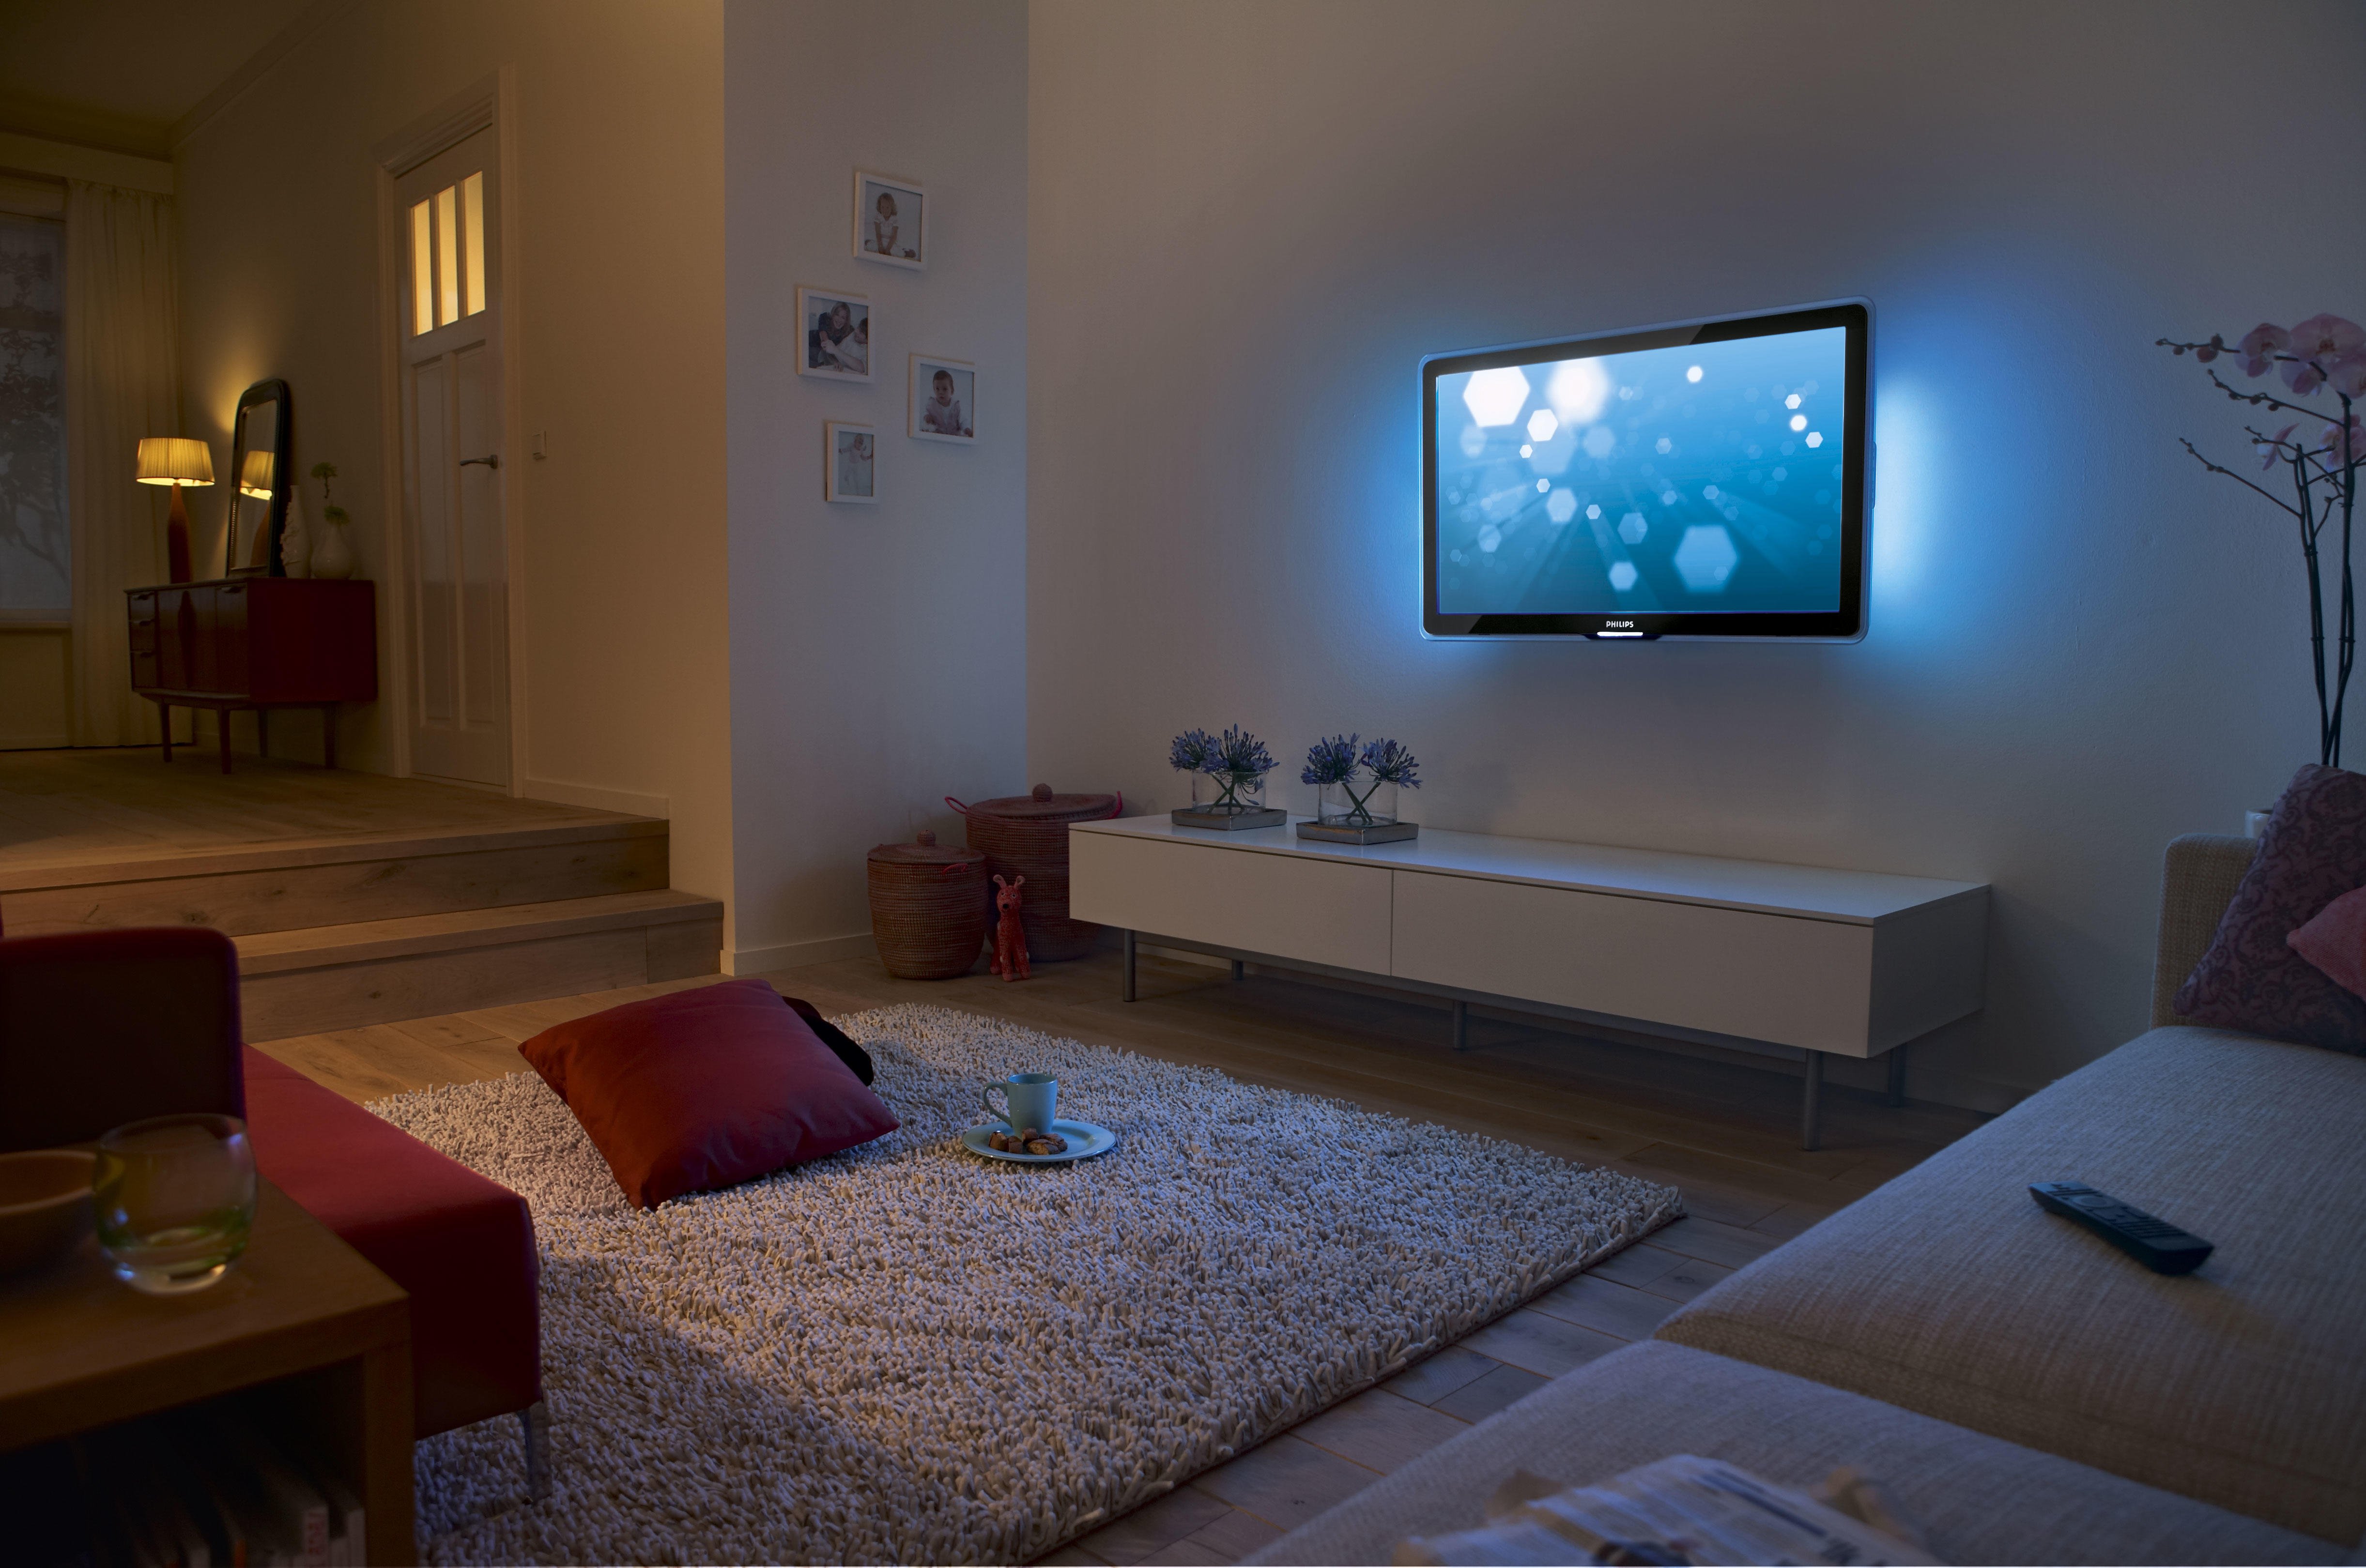 Комната с телевизором. Телевизор в доме. Комната с диваном и телевизором. Комната с теликом. My room tv